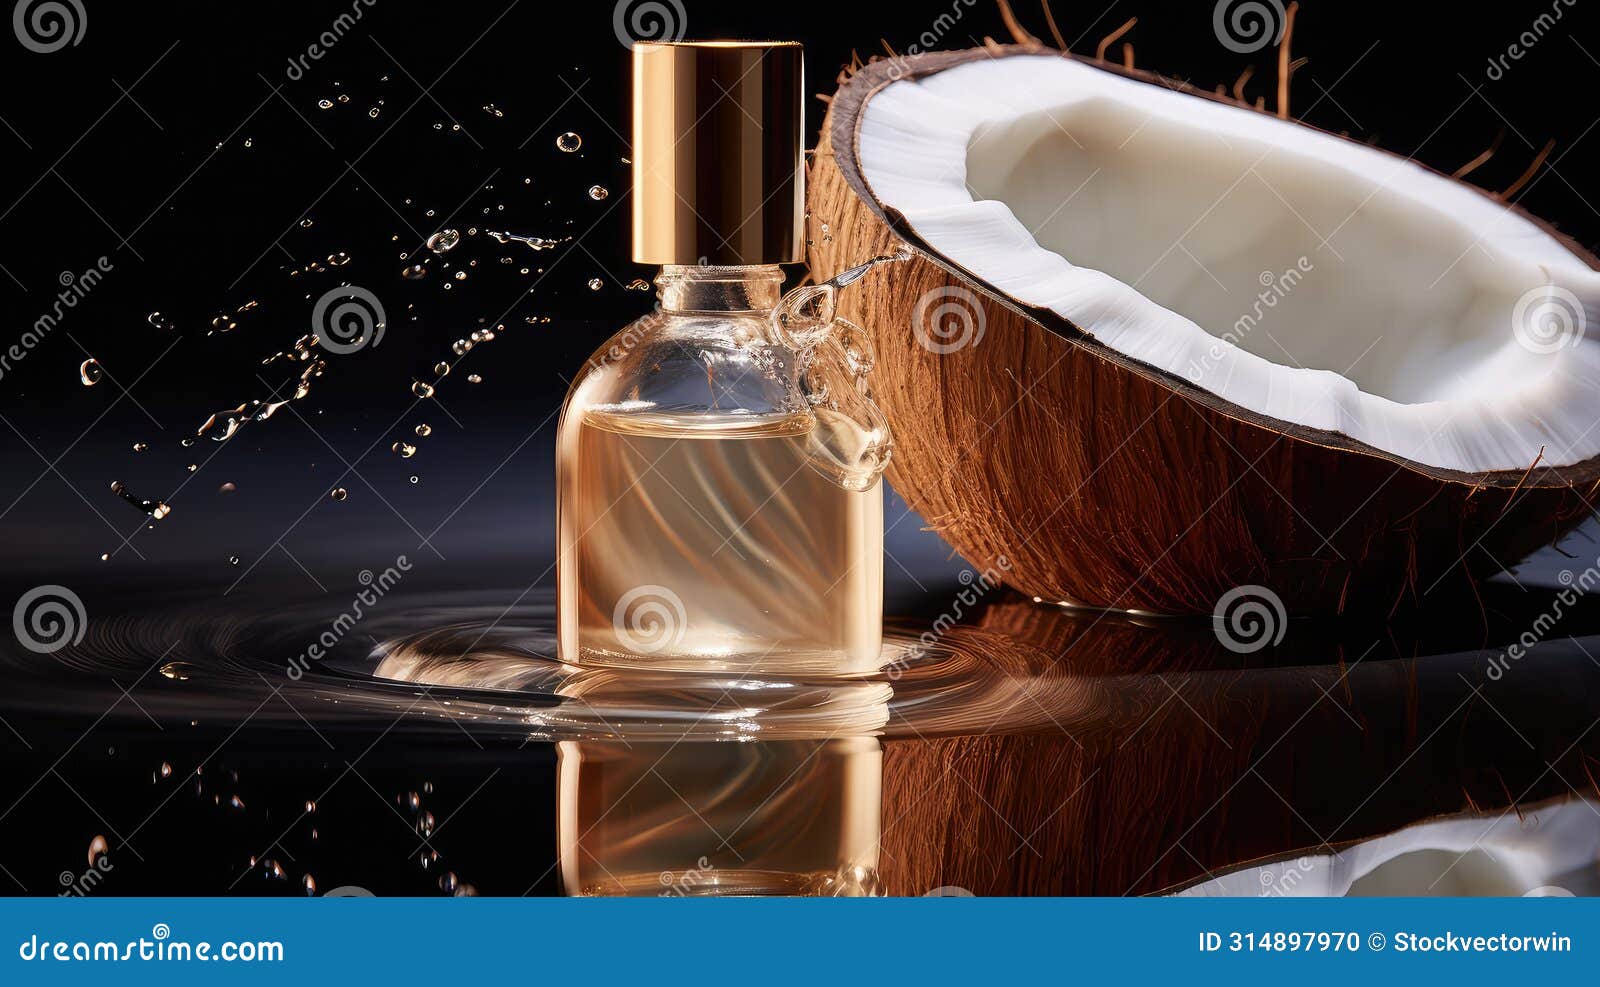 nourishment coconut oil liquid